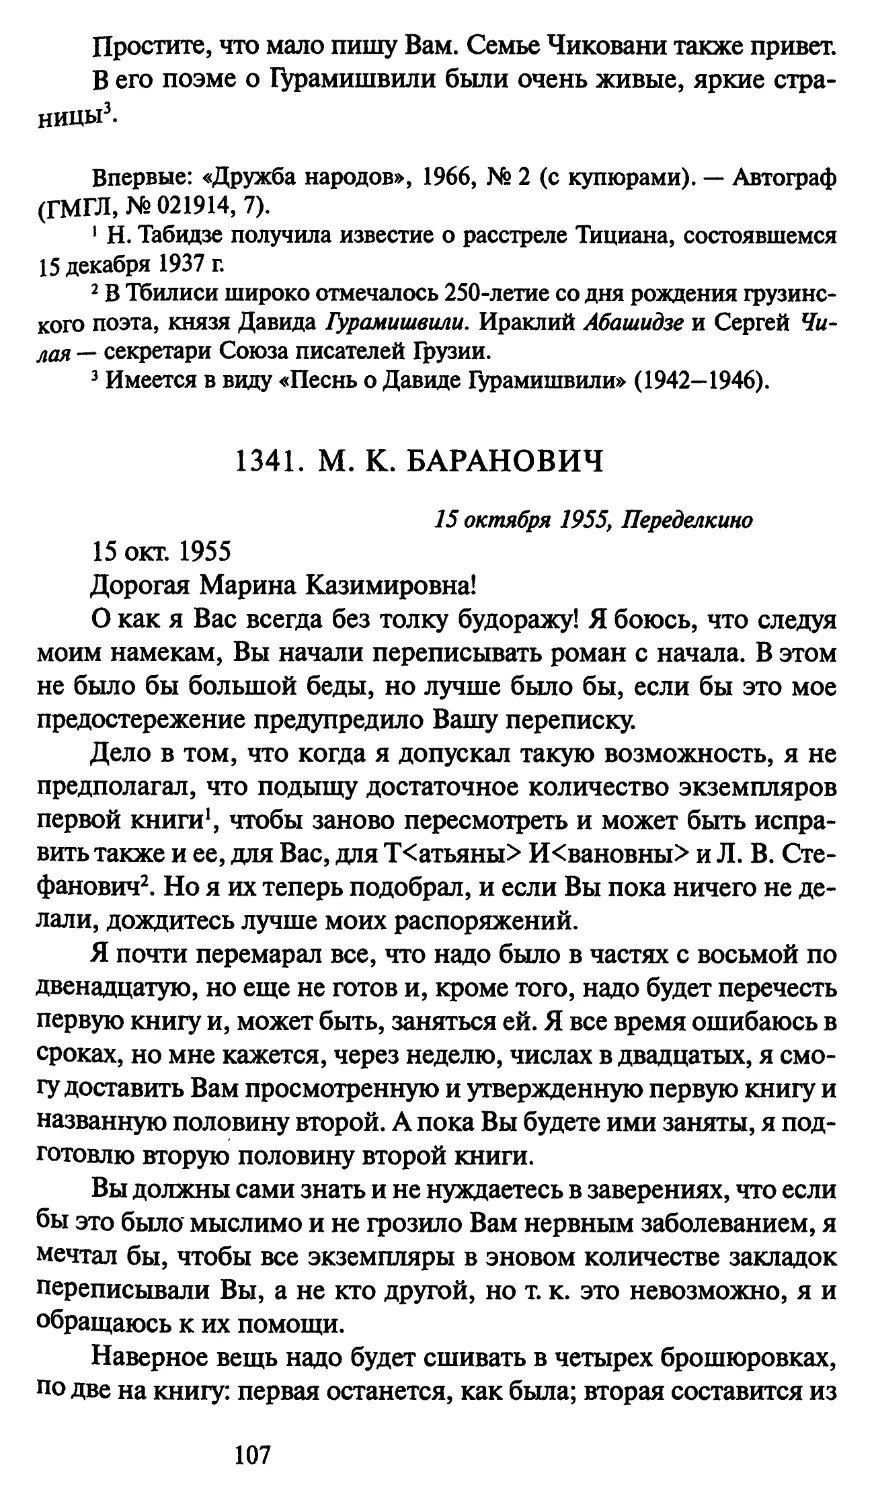 1341. М. К. Баранович 15 октября 1955